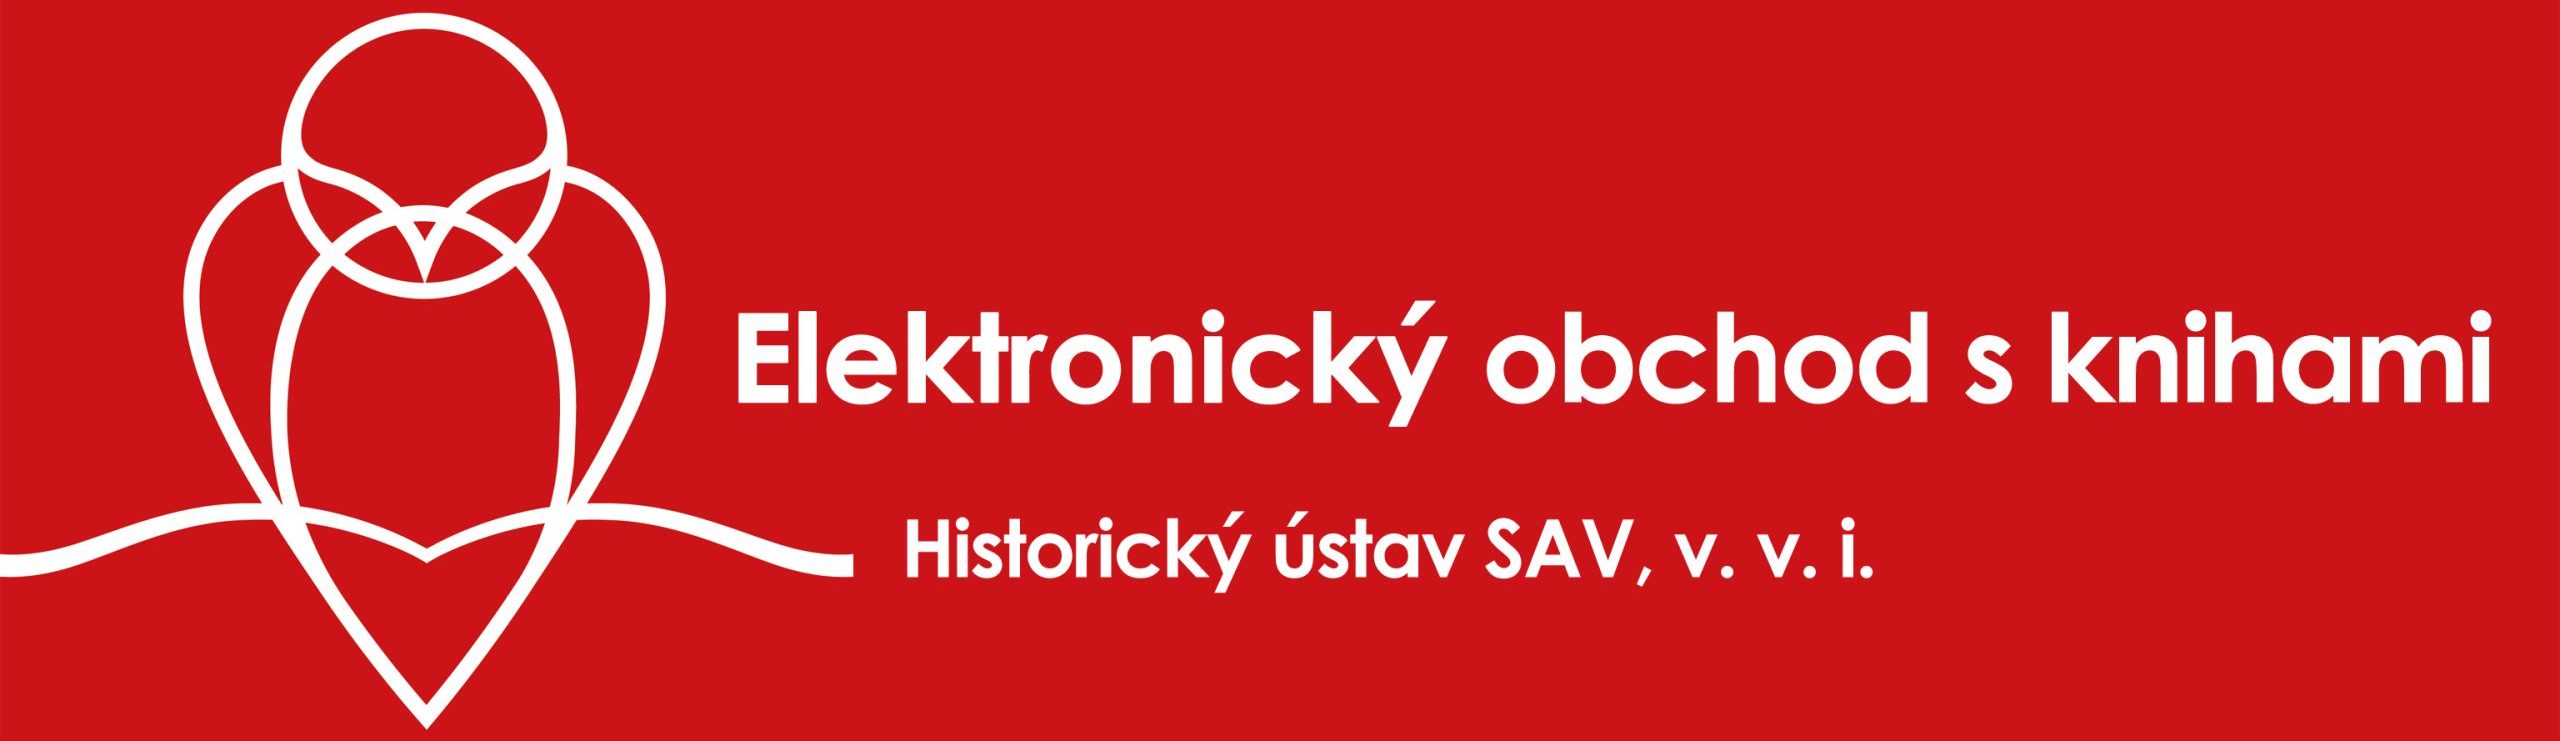 Historický ústav SAV, v. v. i.